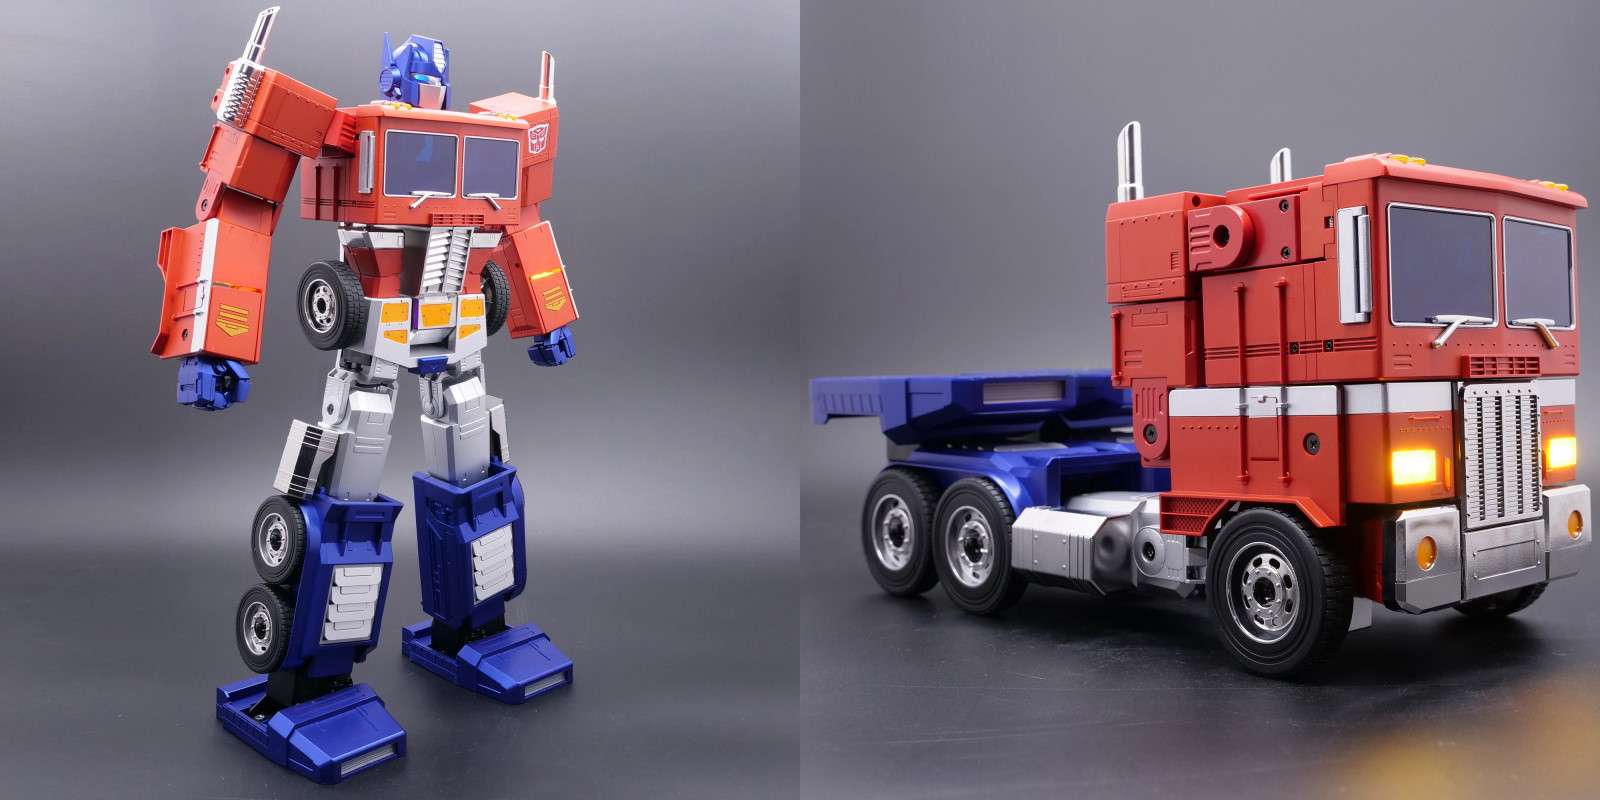 Transformers : le robot Optimus Prime devient réalité !